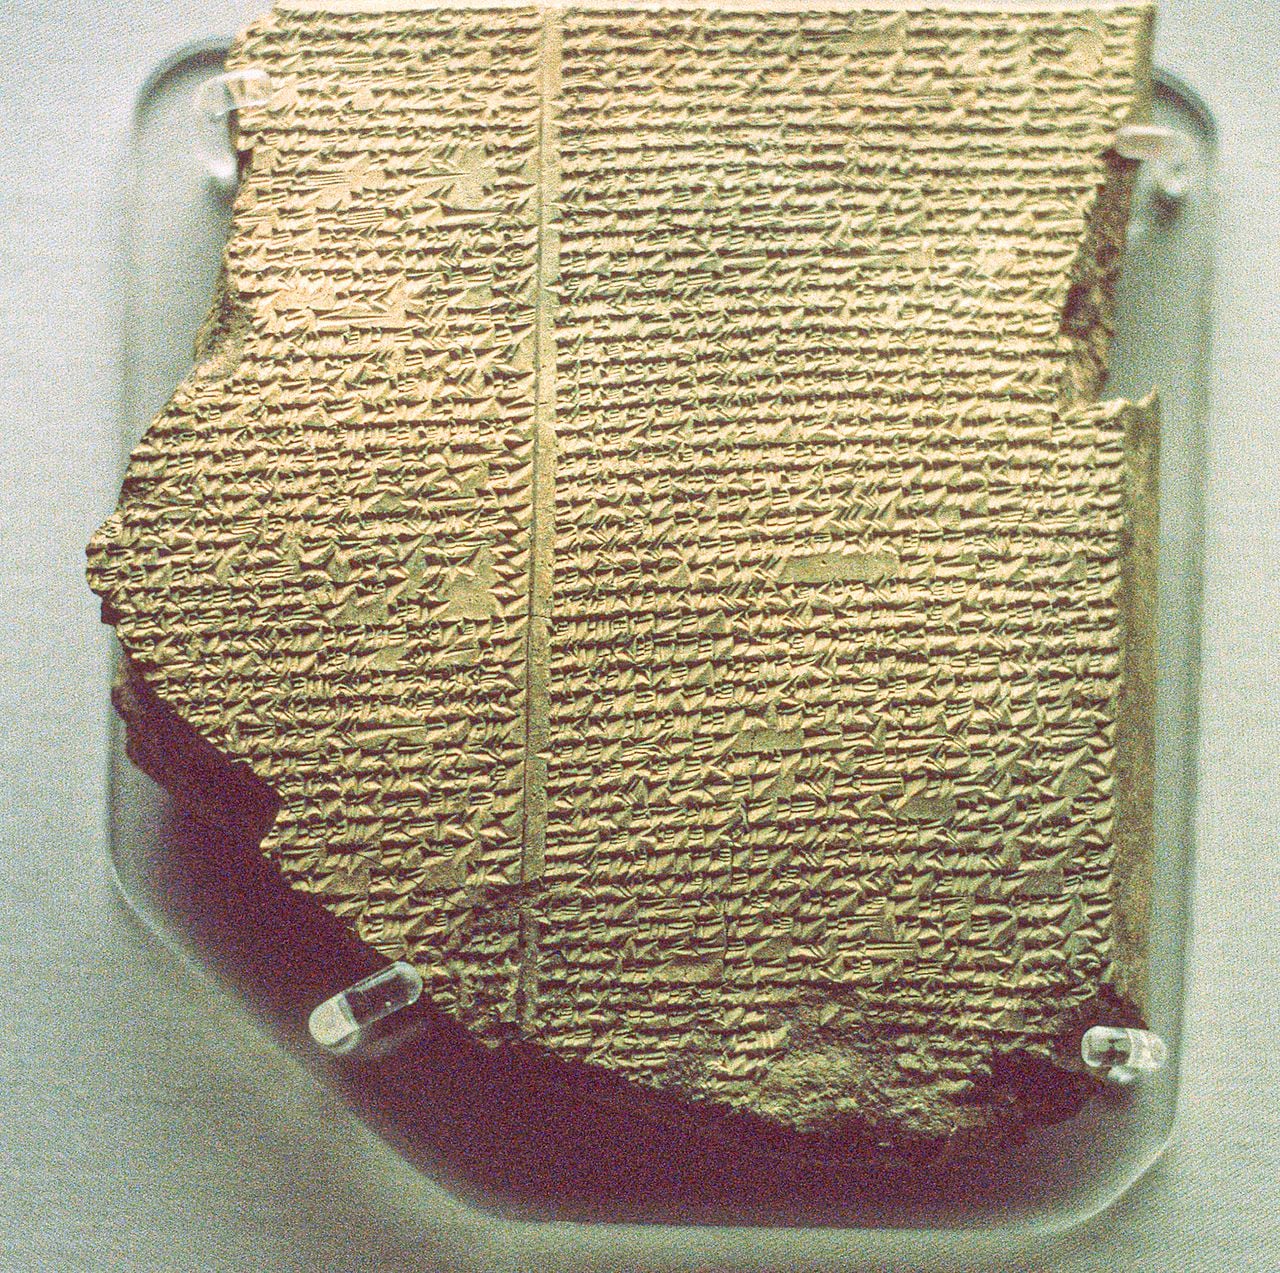 Tablilla cuneiforme que relaciona parte de la epopeya de Gilgamesh